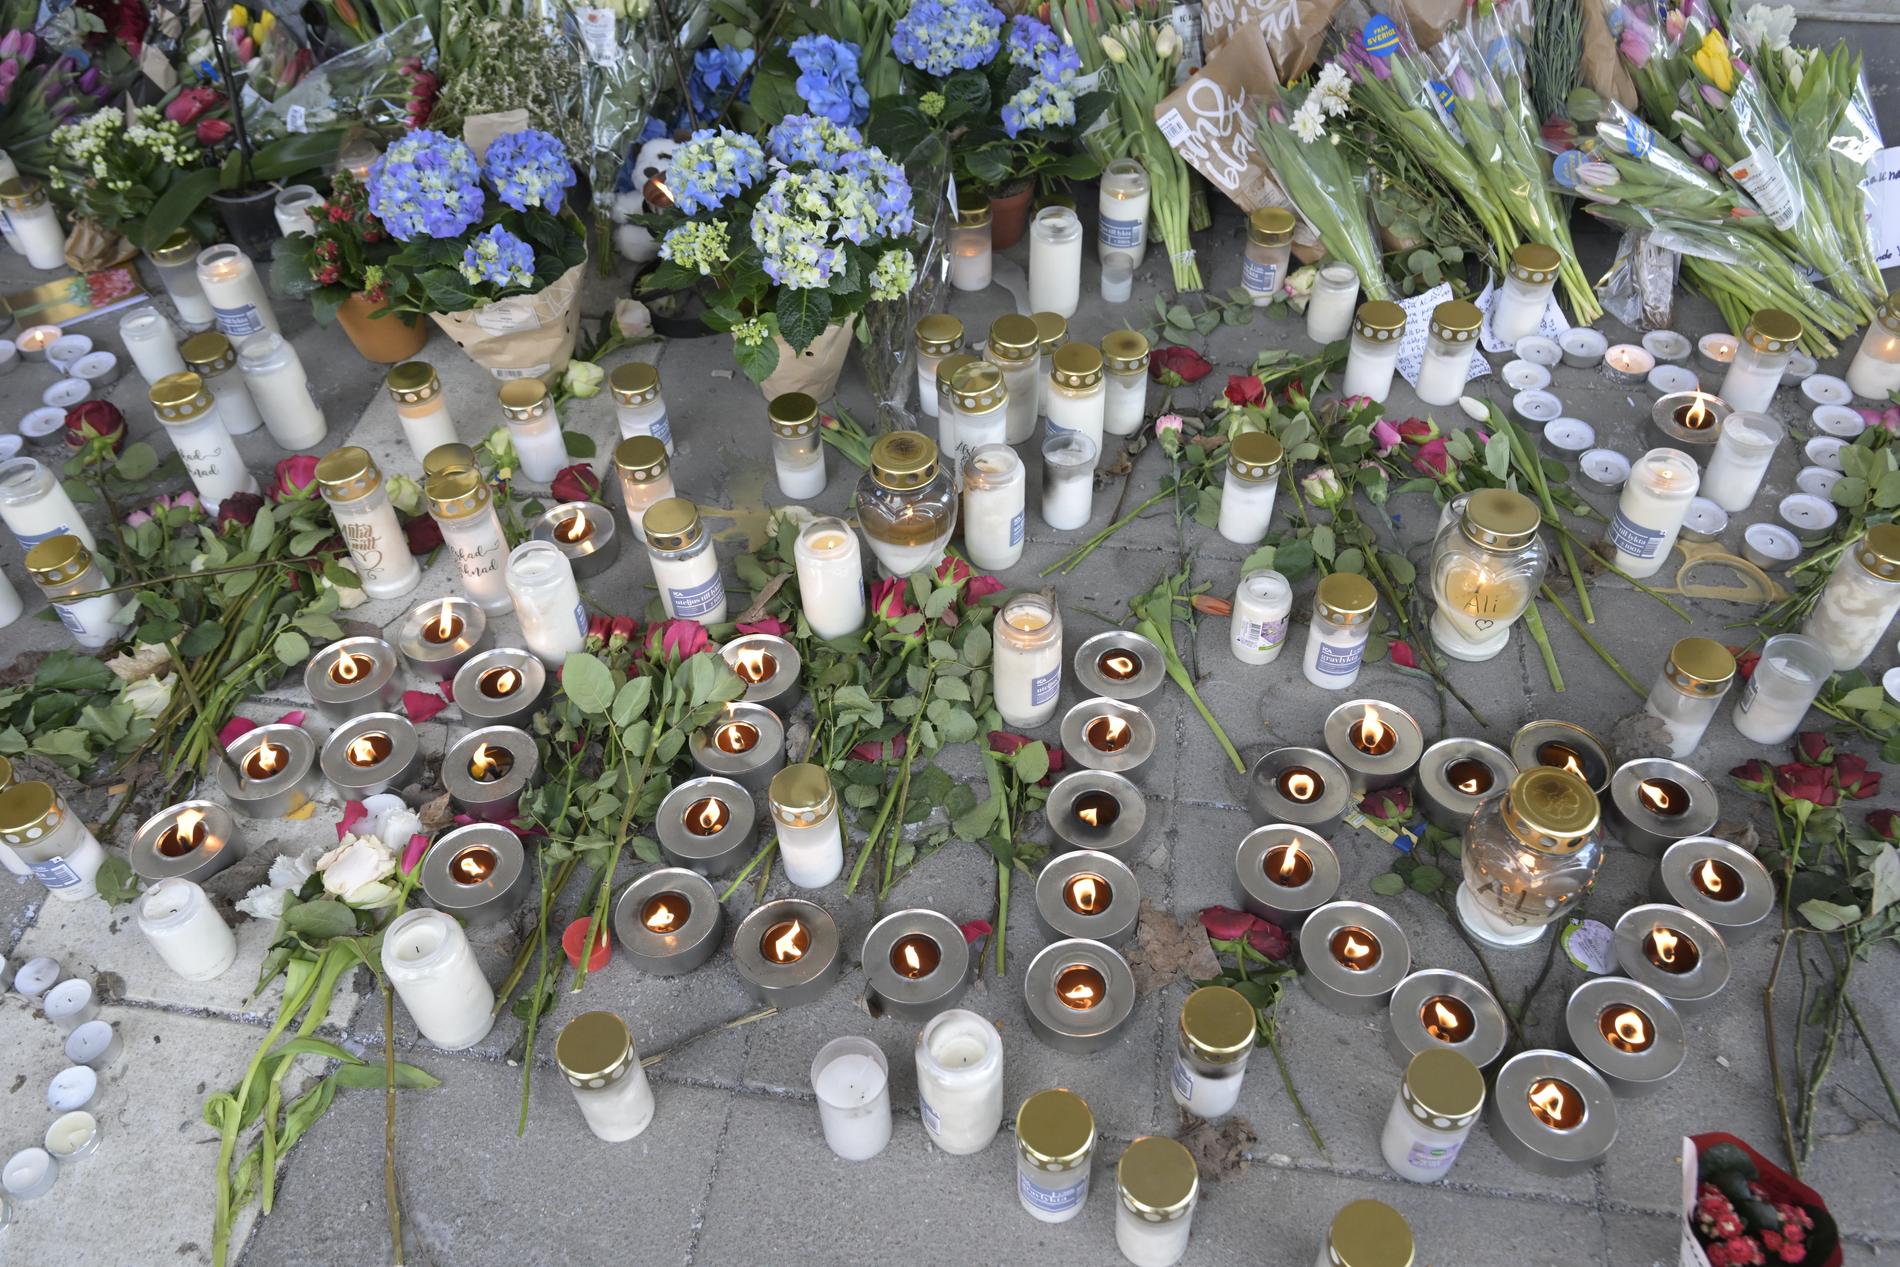 Blommor och ljus i närheten av mordplatsen i Skogås Centrum i södra Stockholm, där en 15-årig pojke sköts ihjäl inne på en restaurang den 28 januari. Arkivbild.